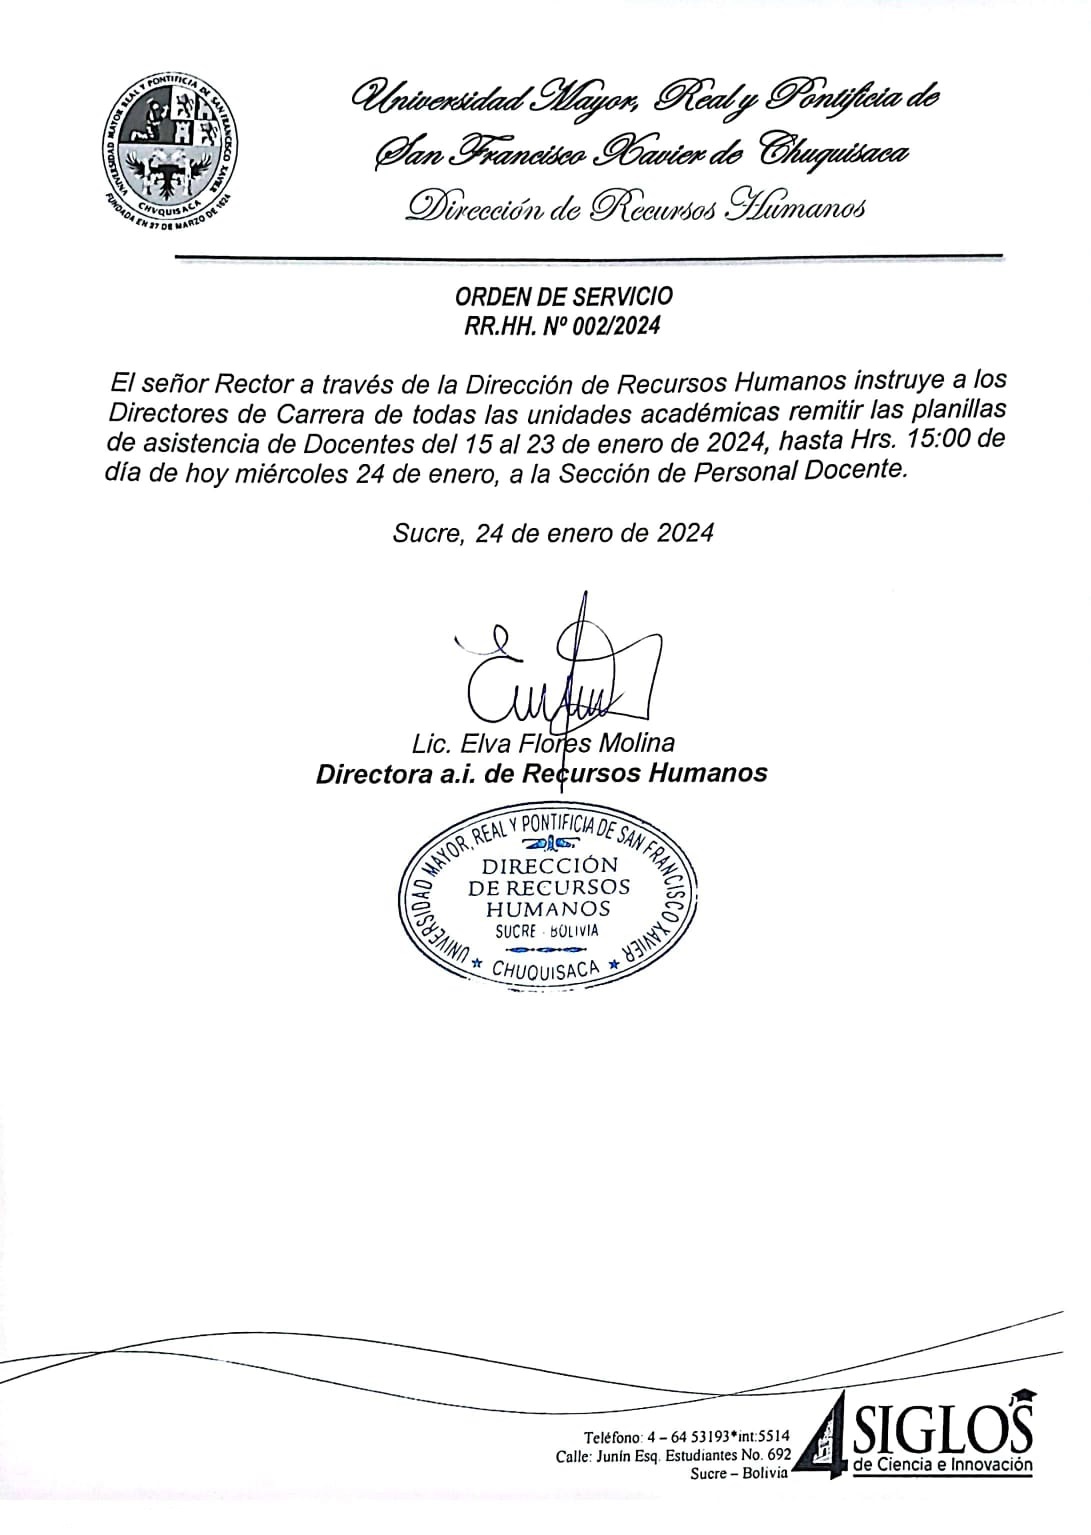 ORDEN DE SERVICIO RR.HH. Nº 002/2024 , REMITIR PLANILLAS DE ASISTENCIA DOCENTE.